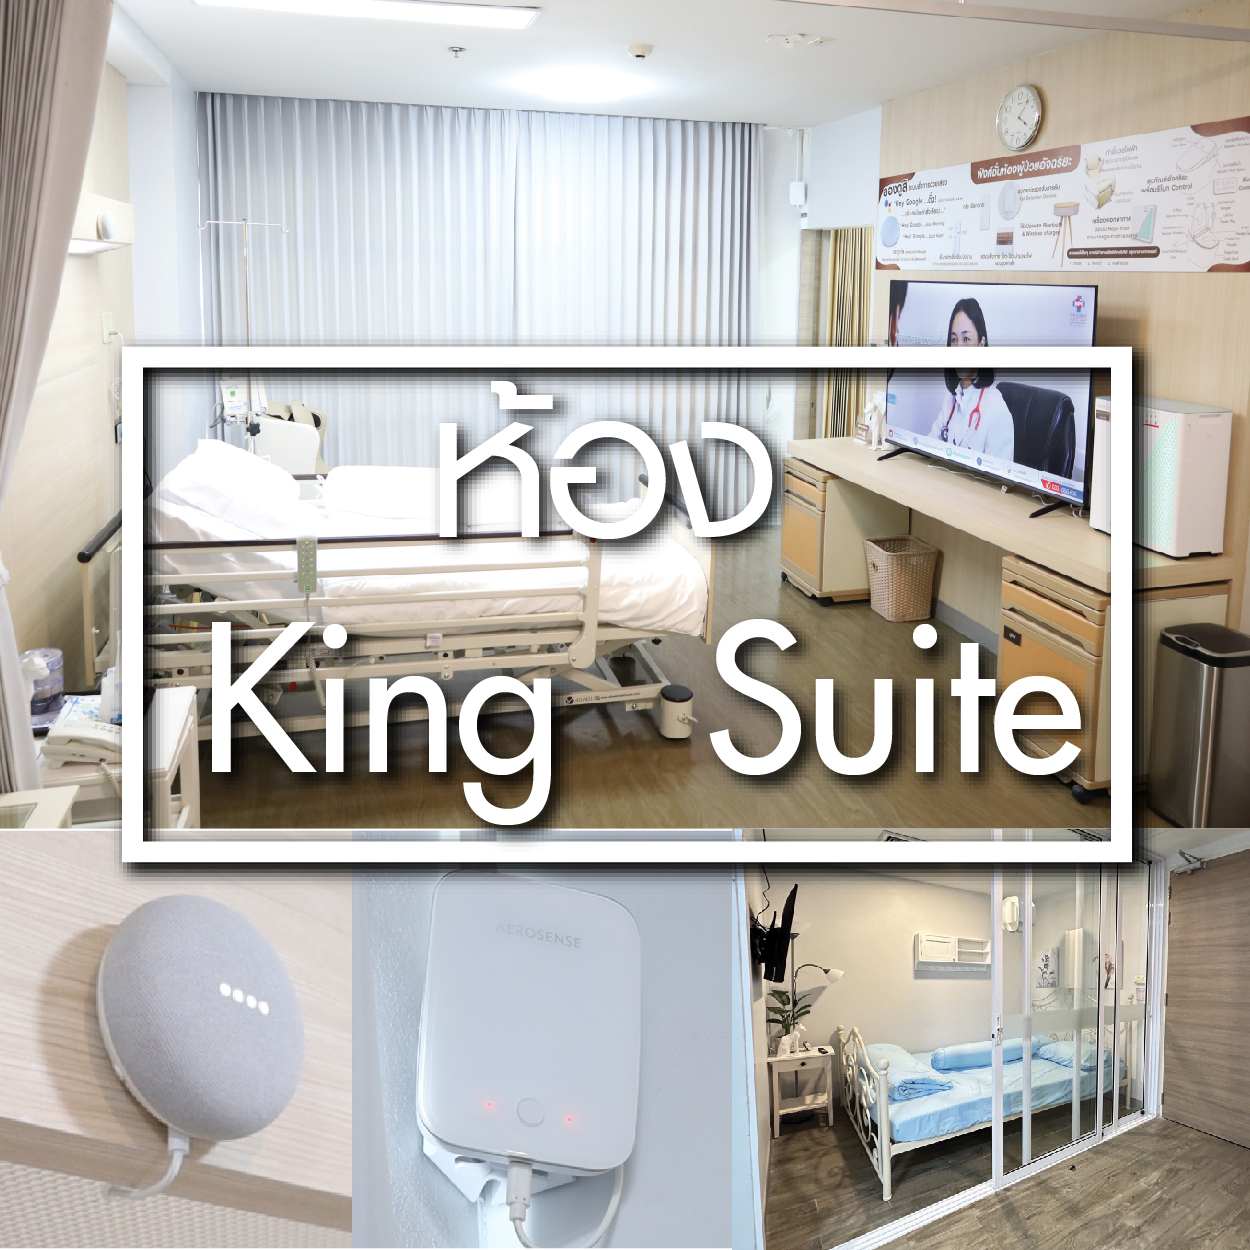 ห้อง King Suite - ห้องพักผู้ป่วยใน - โรงพยาบาลรวมแพทย์ฉะเชิงเทรา